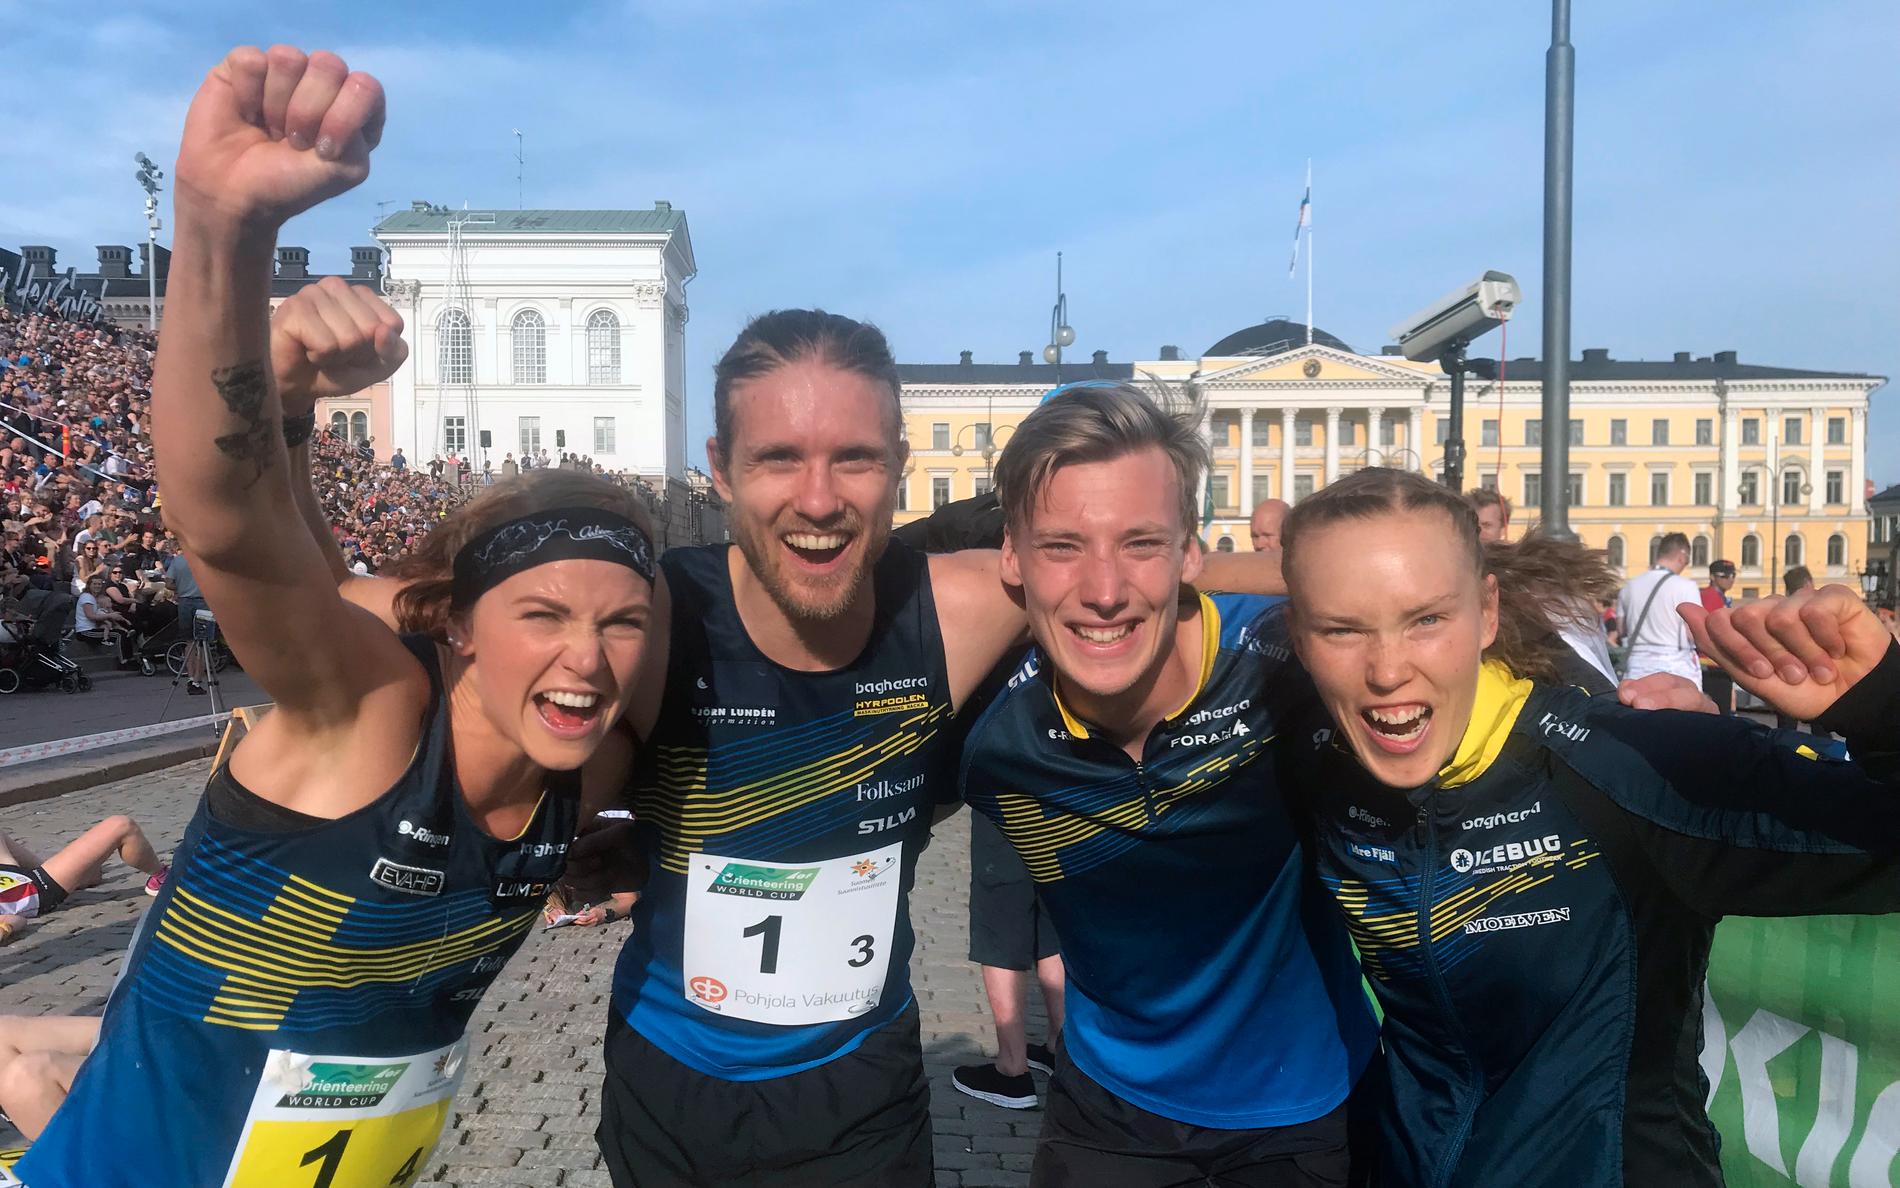 Sveriges segrande sprintstafett lag i Helsingfors (från vänster): Karolin Ohlsson, Gustav Bergman, Emil Svensk, Tove Alexandersson.